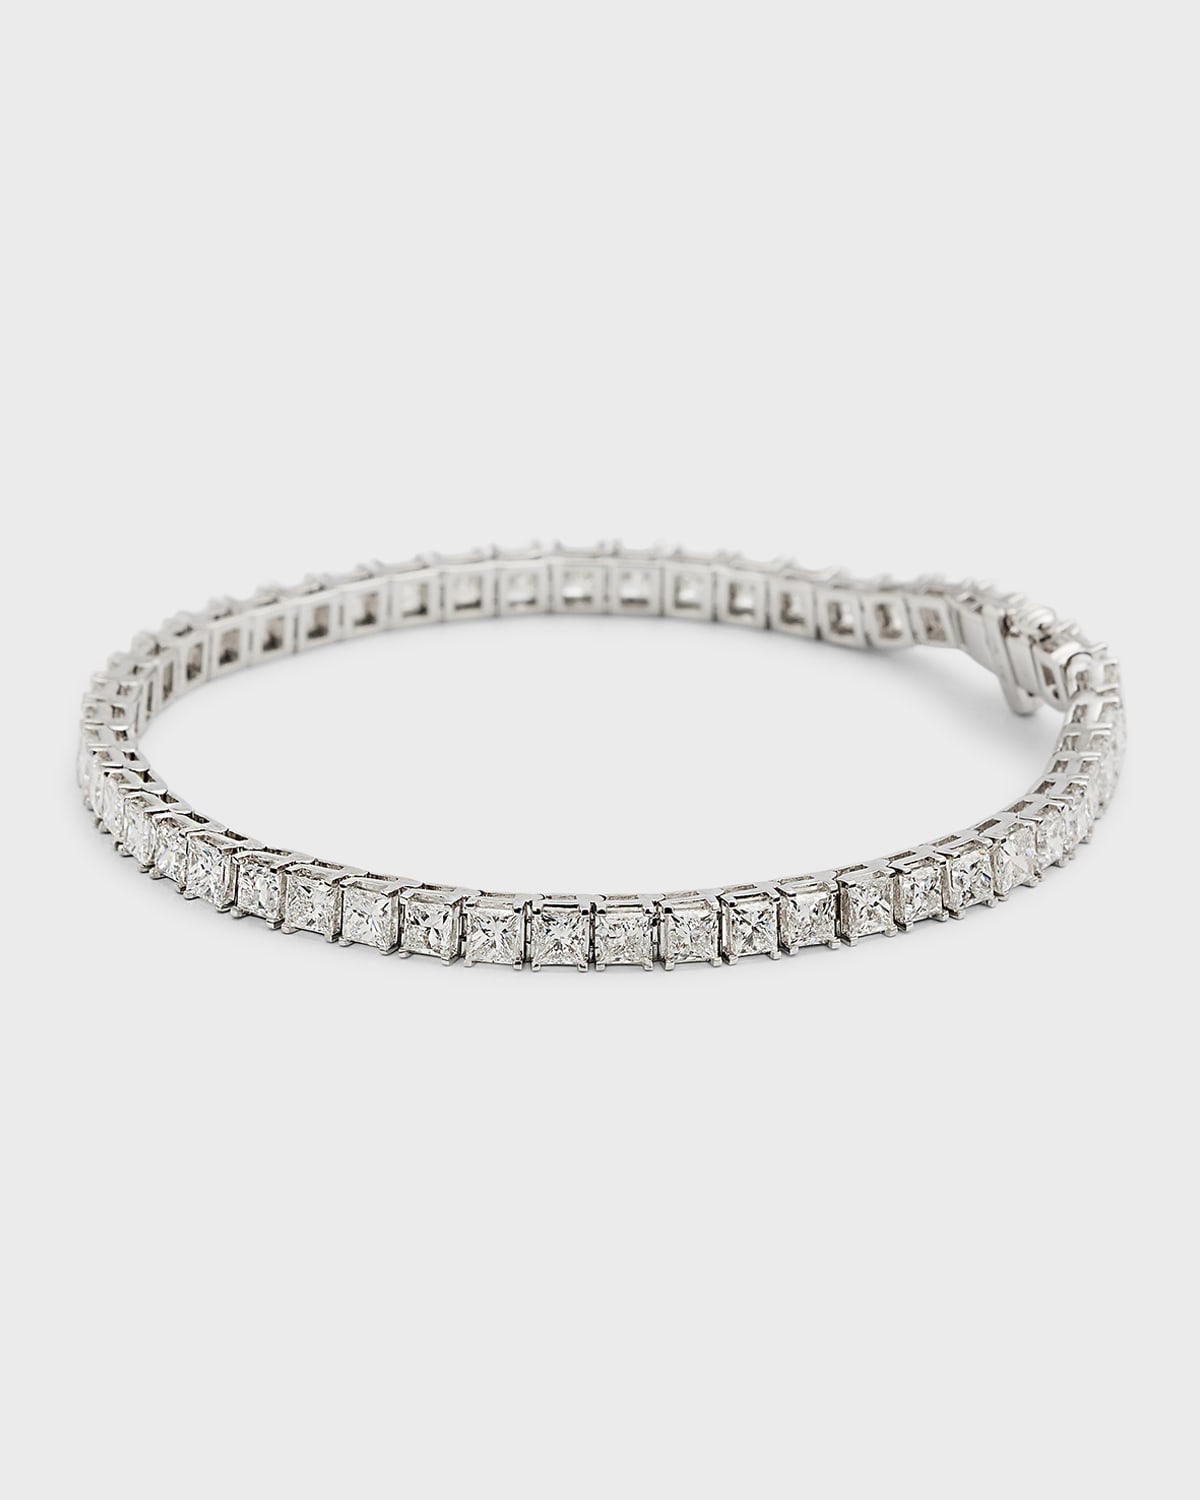 18K White Gold Princess-Cut Diamond Bracelet, 7"L